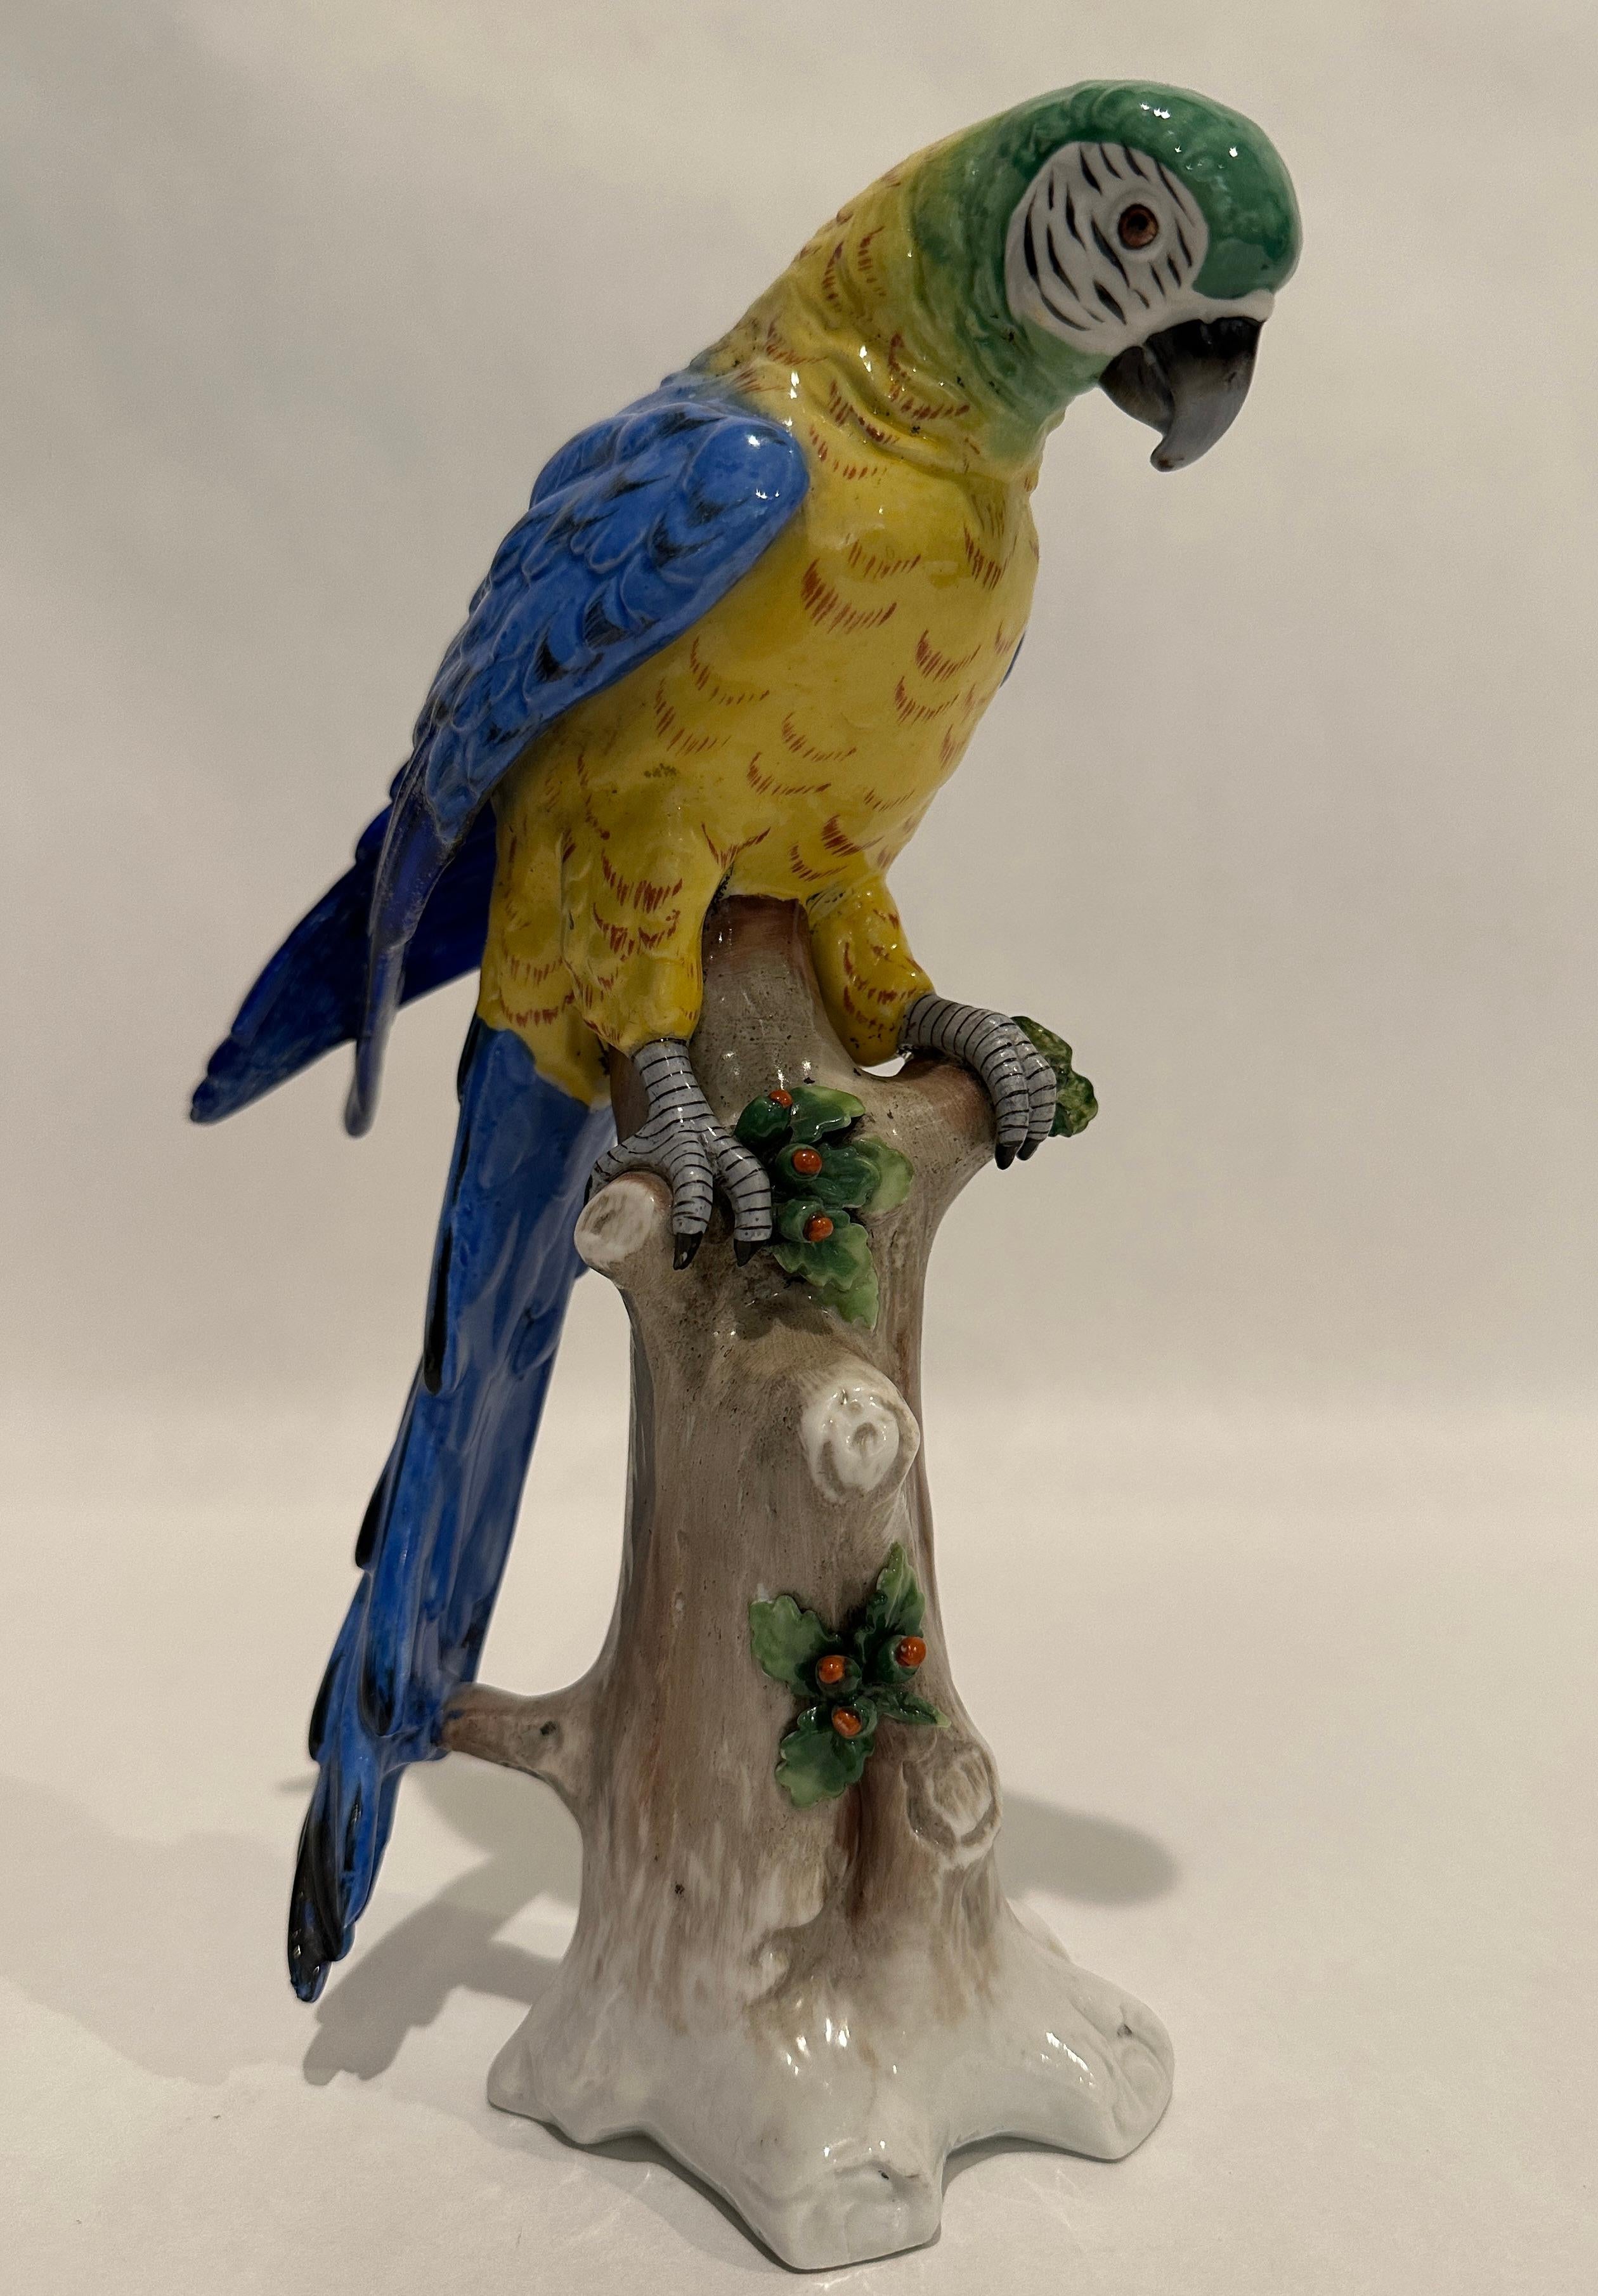 Perroquet en porcelaine coloré et finement peint en vert, jaune et bleu, perché sur une branche réaliste avec des feuilles et des baies. En bas, le 